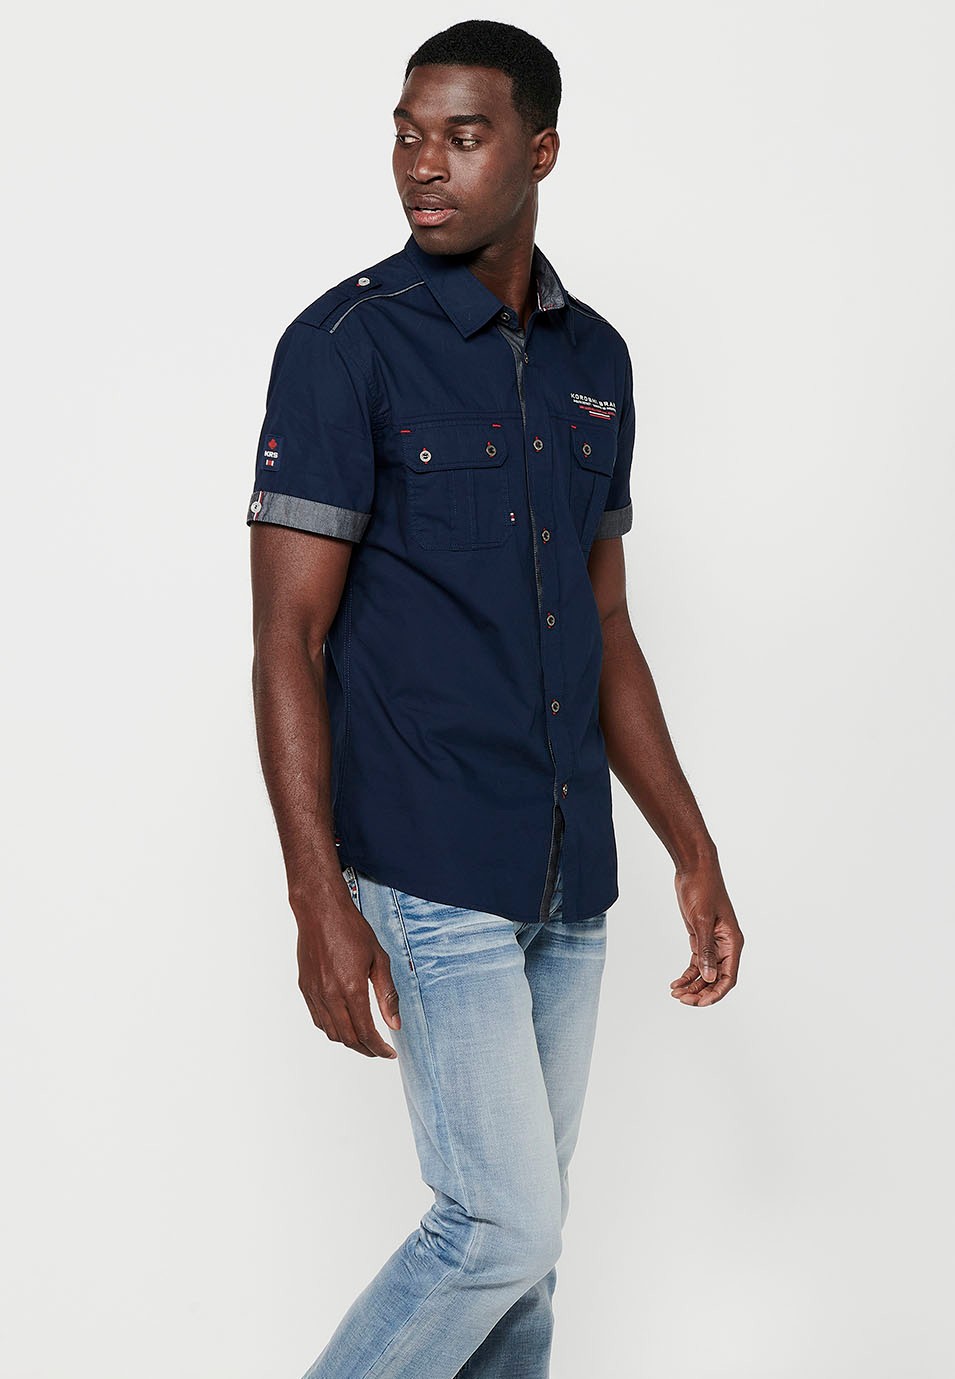 Cotton shirt, short sleeve, shoulder details, navy color for men